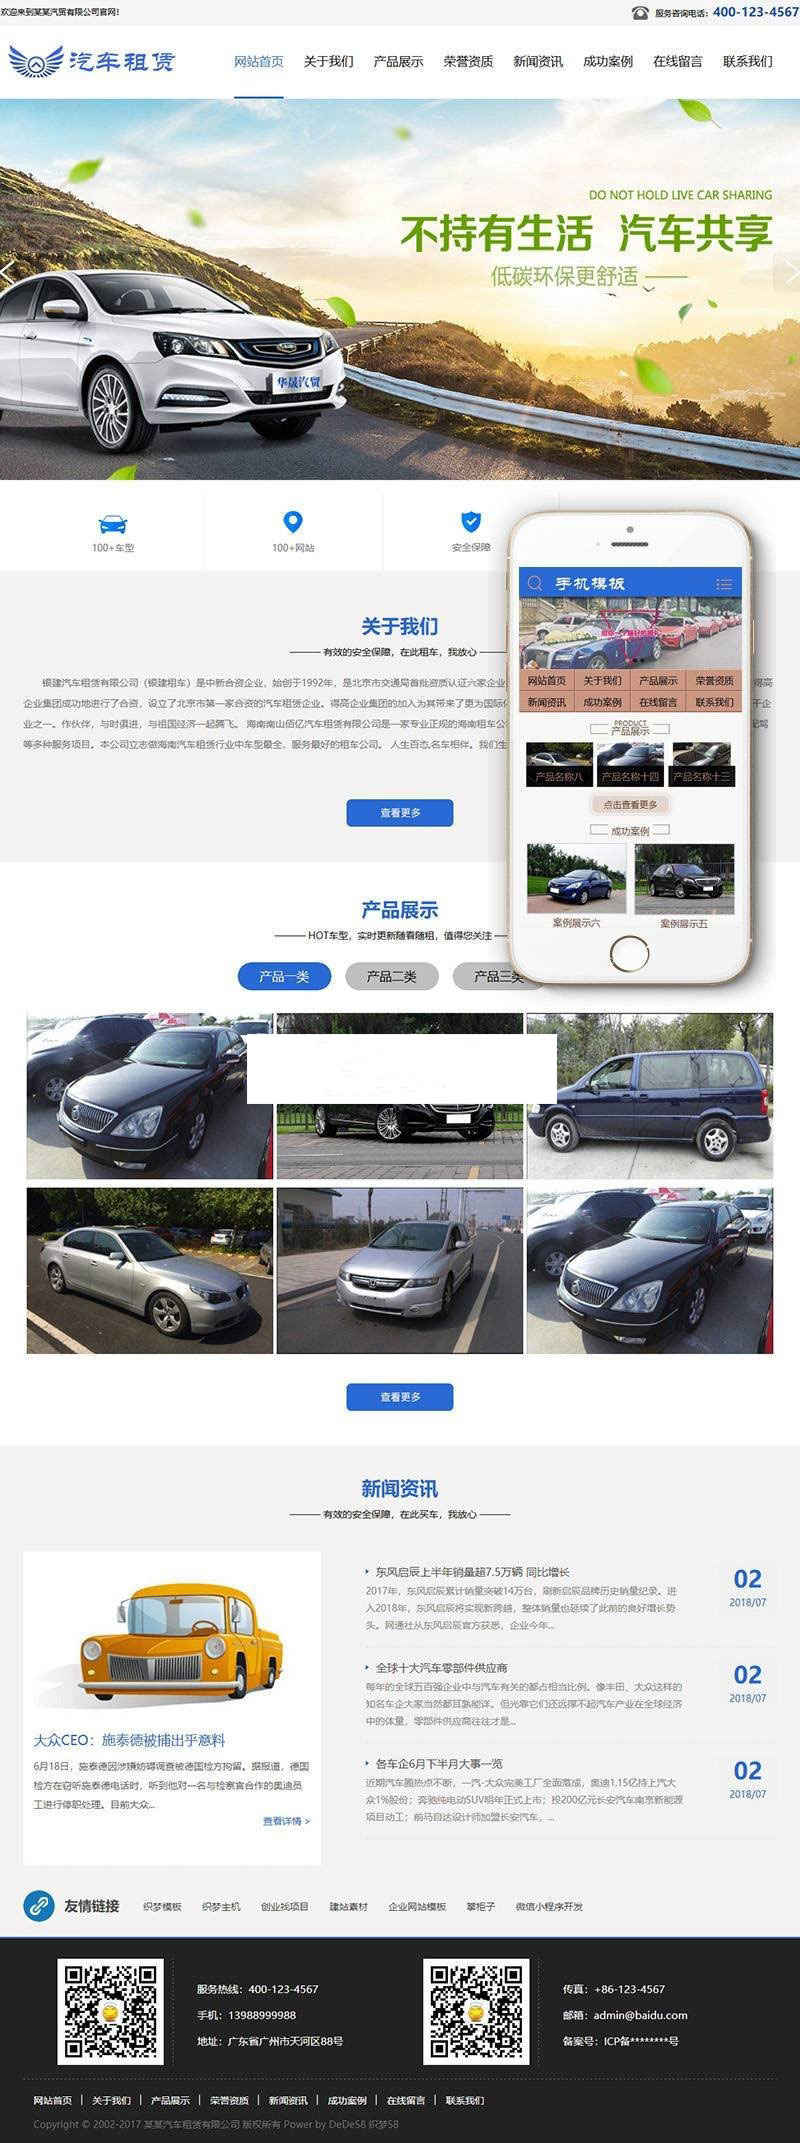 织梦dedecms汽车租赁贸易企业网站模板GBK(带手机移动端)